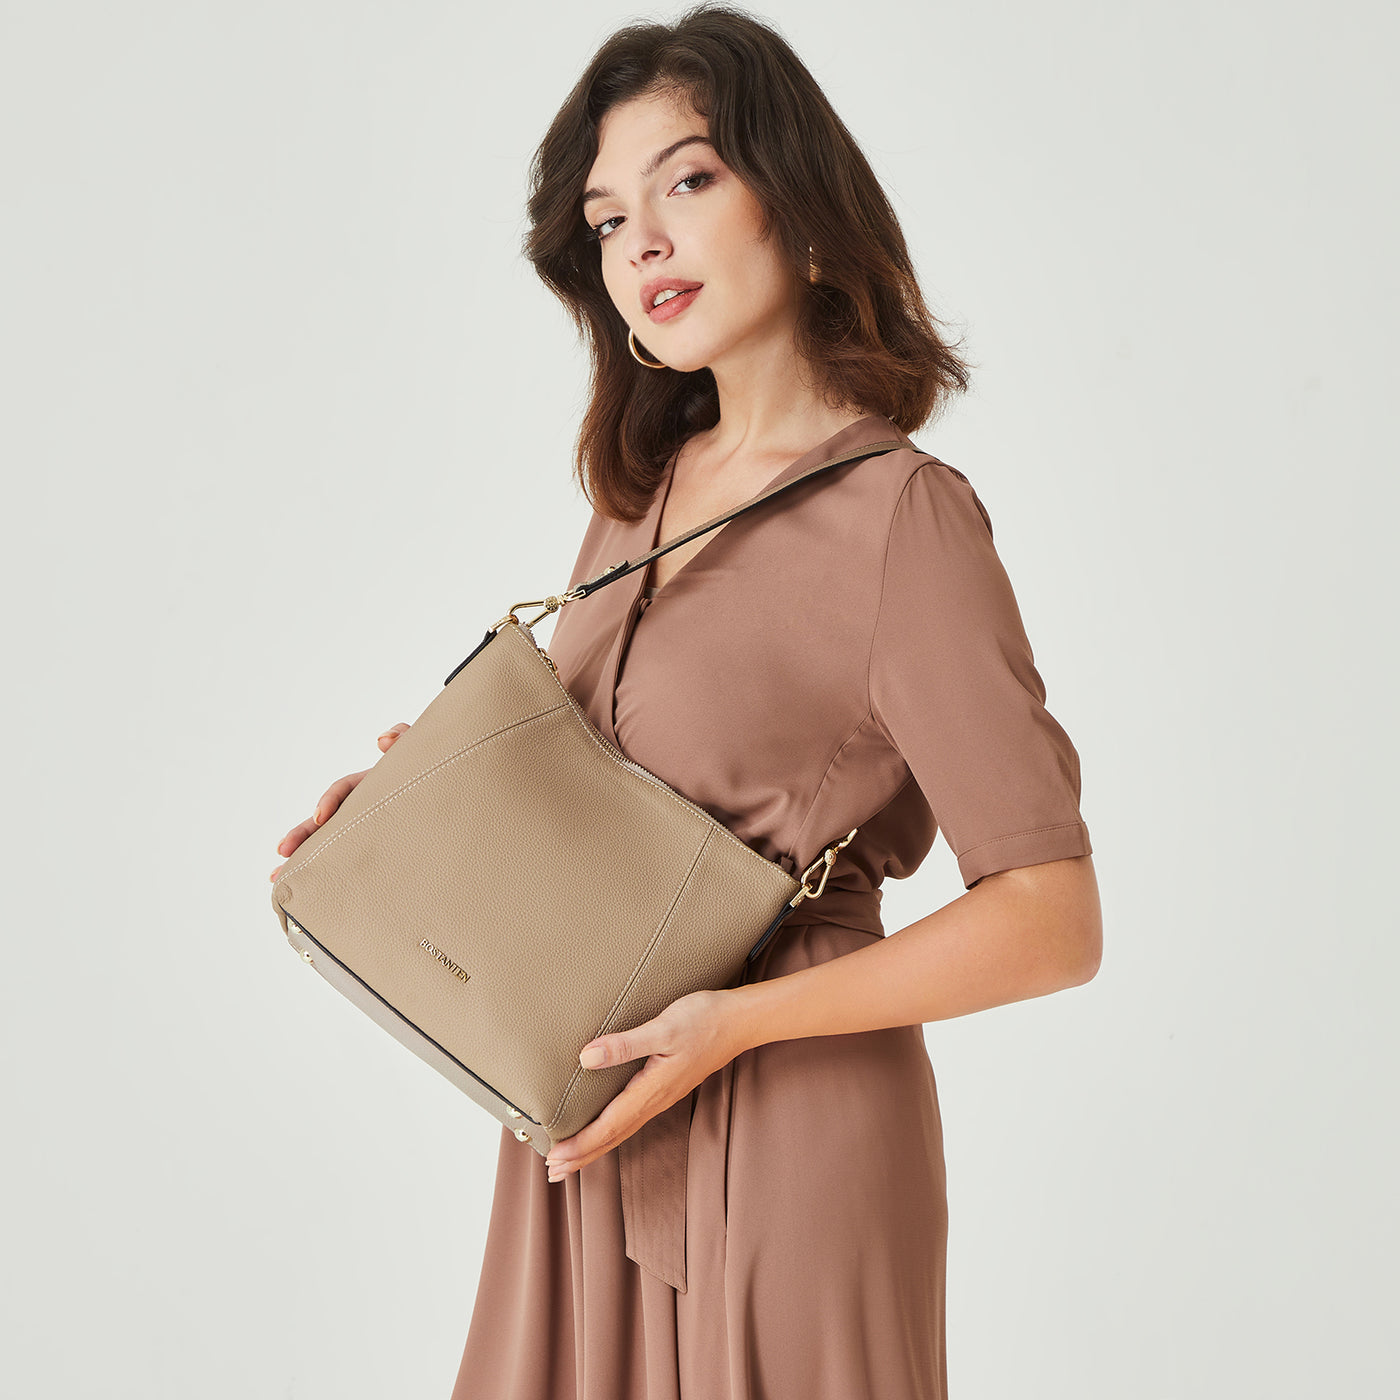 BOSTANTEN Leather Hobo Handbags Designer Purses for Women Shoulder Crossbody Bags